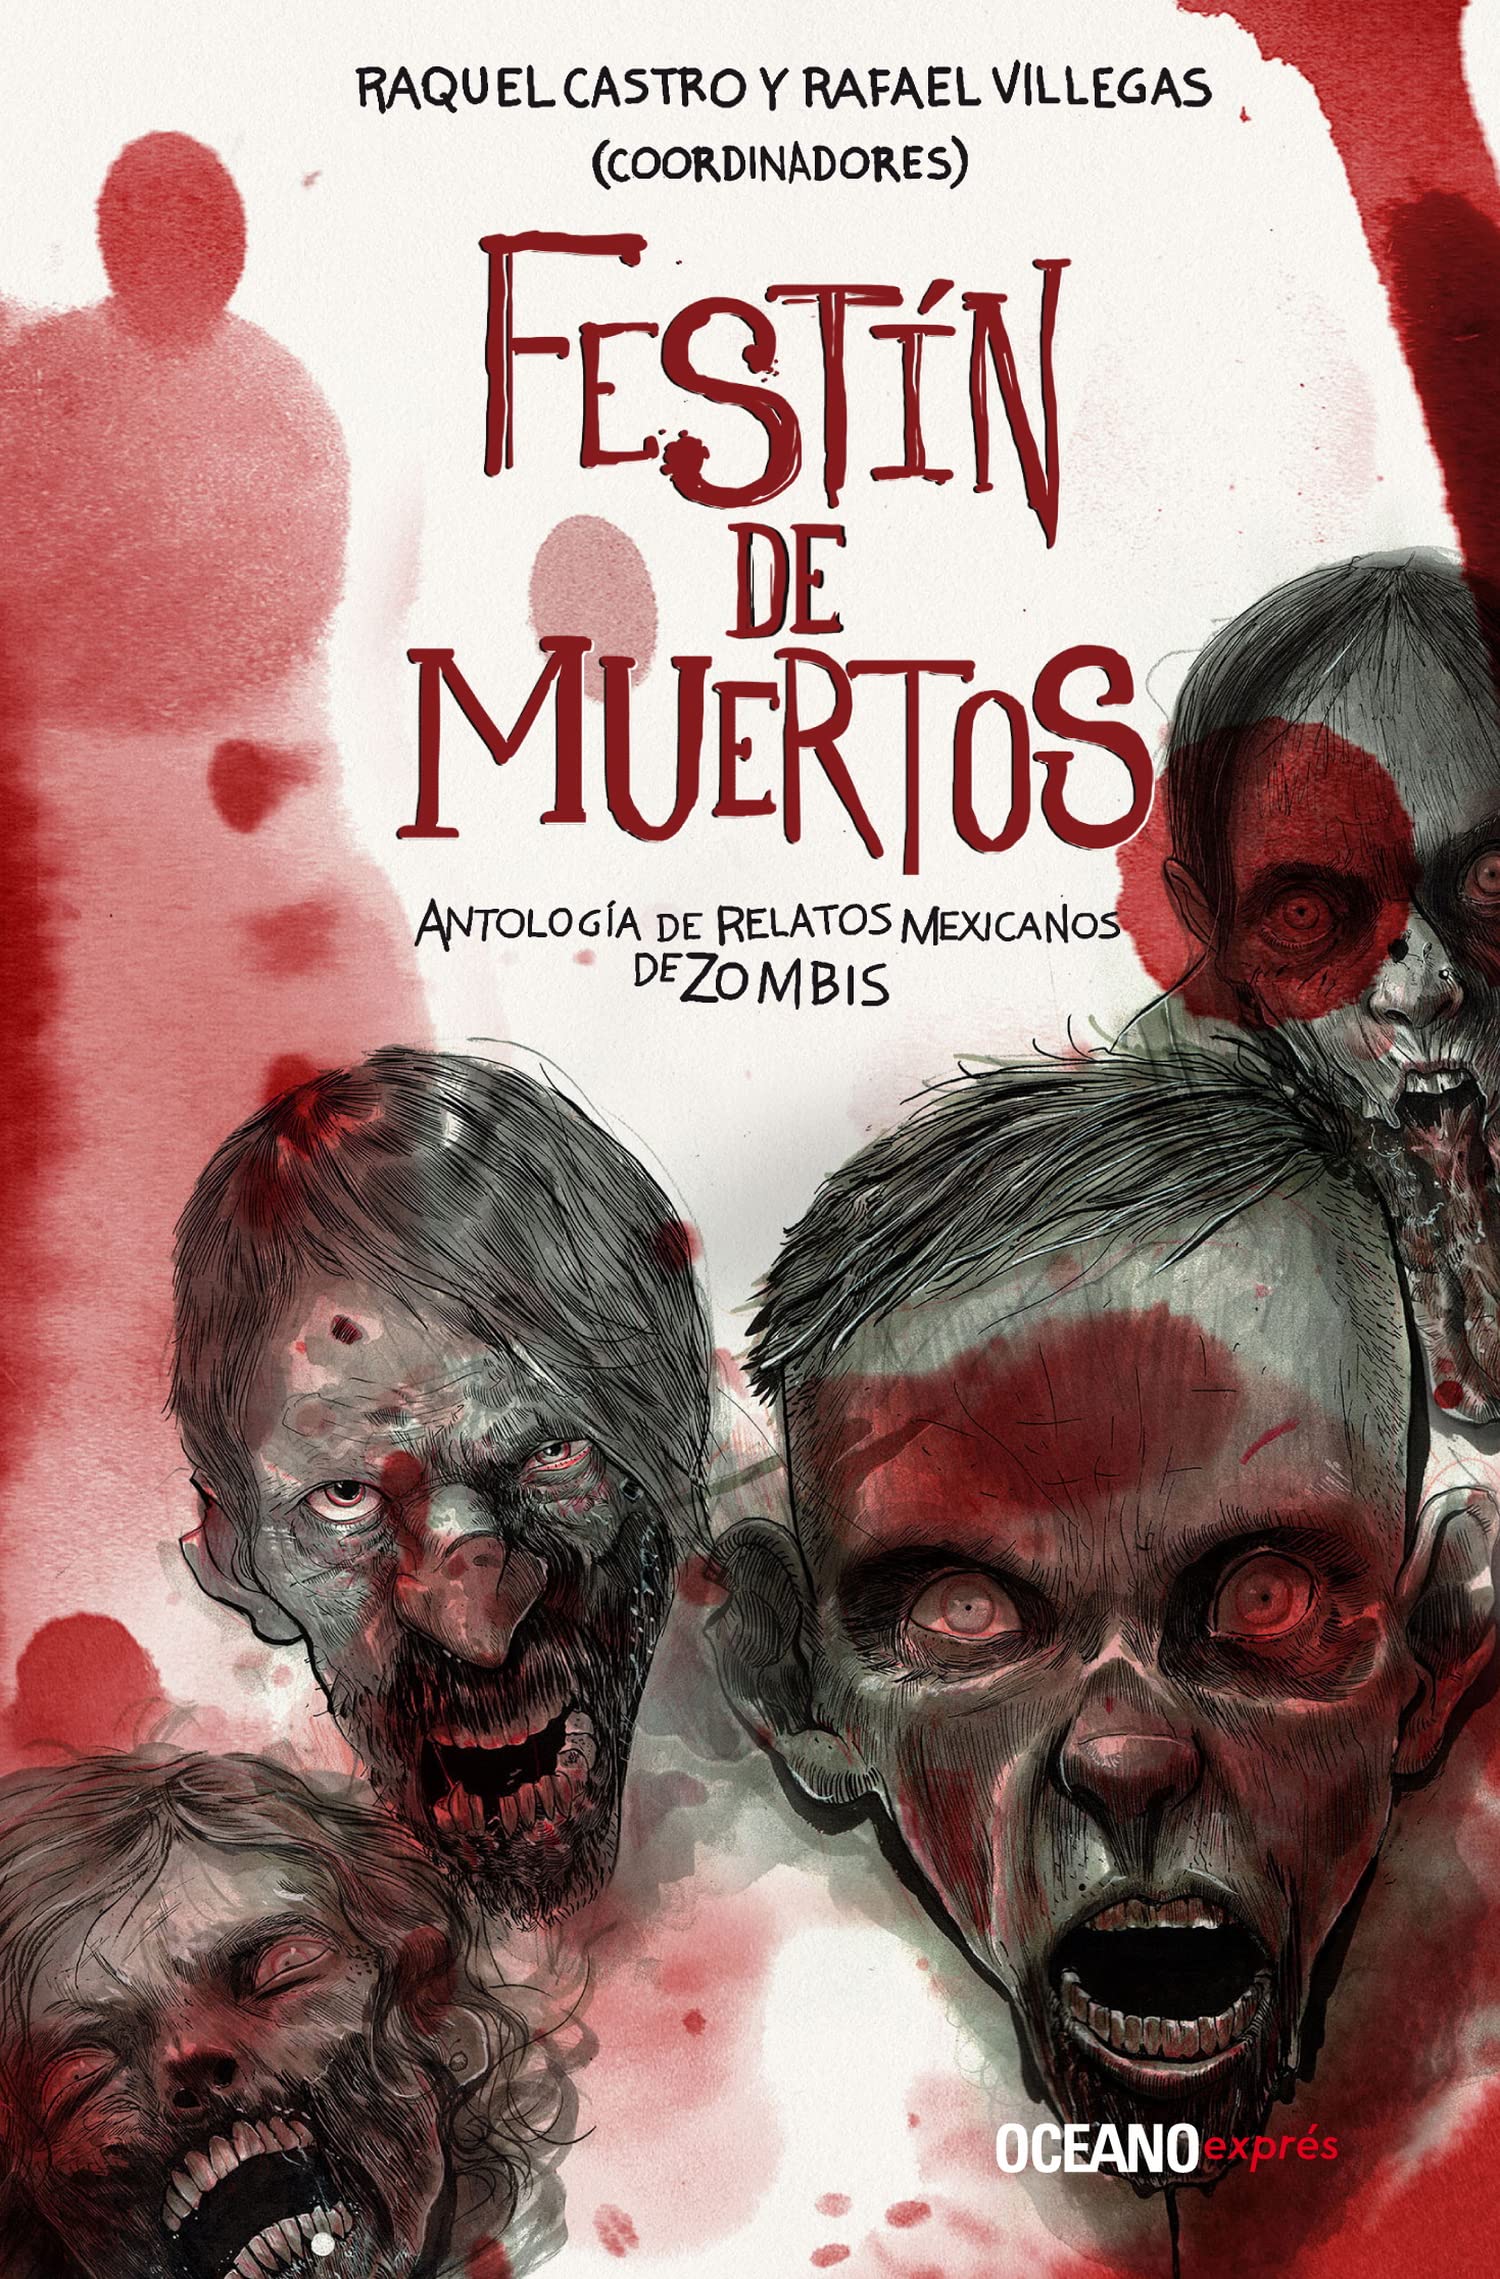 Libro: Festín de Muertos, Antología de Relatos Mexicanos de Zombis por Raquel Castro y Rafael Villegas